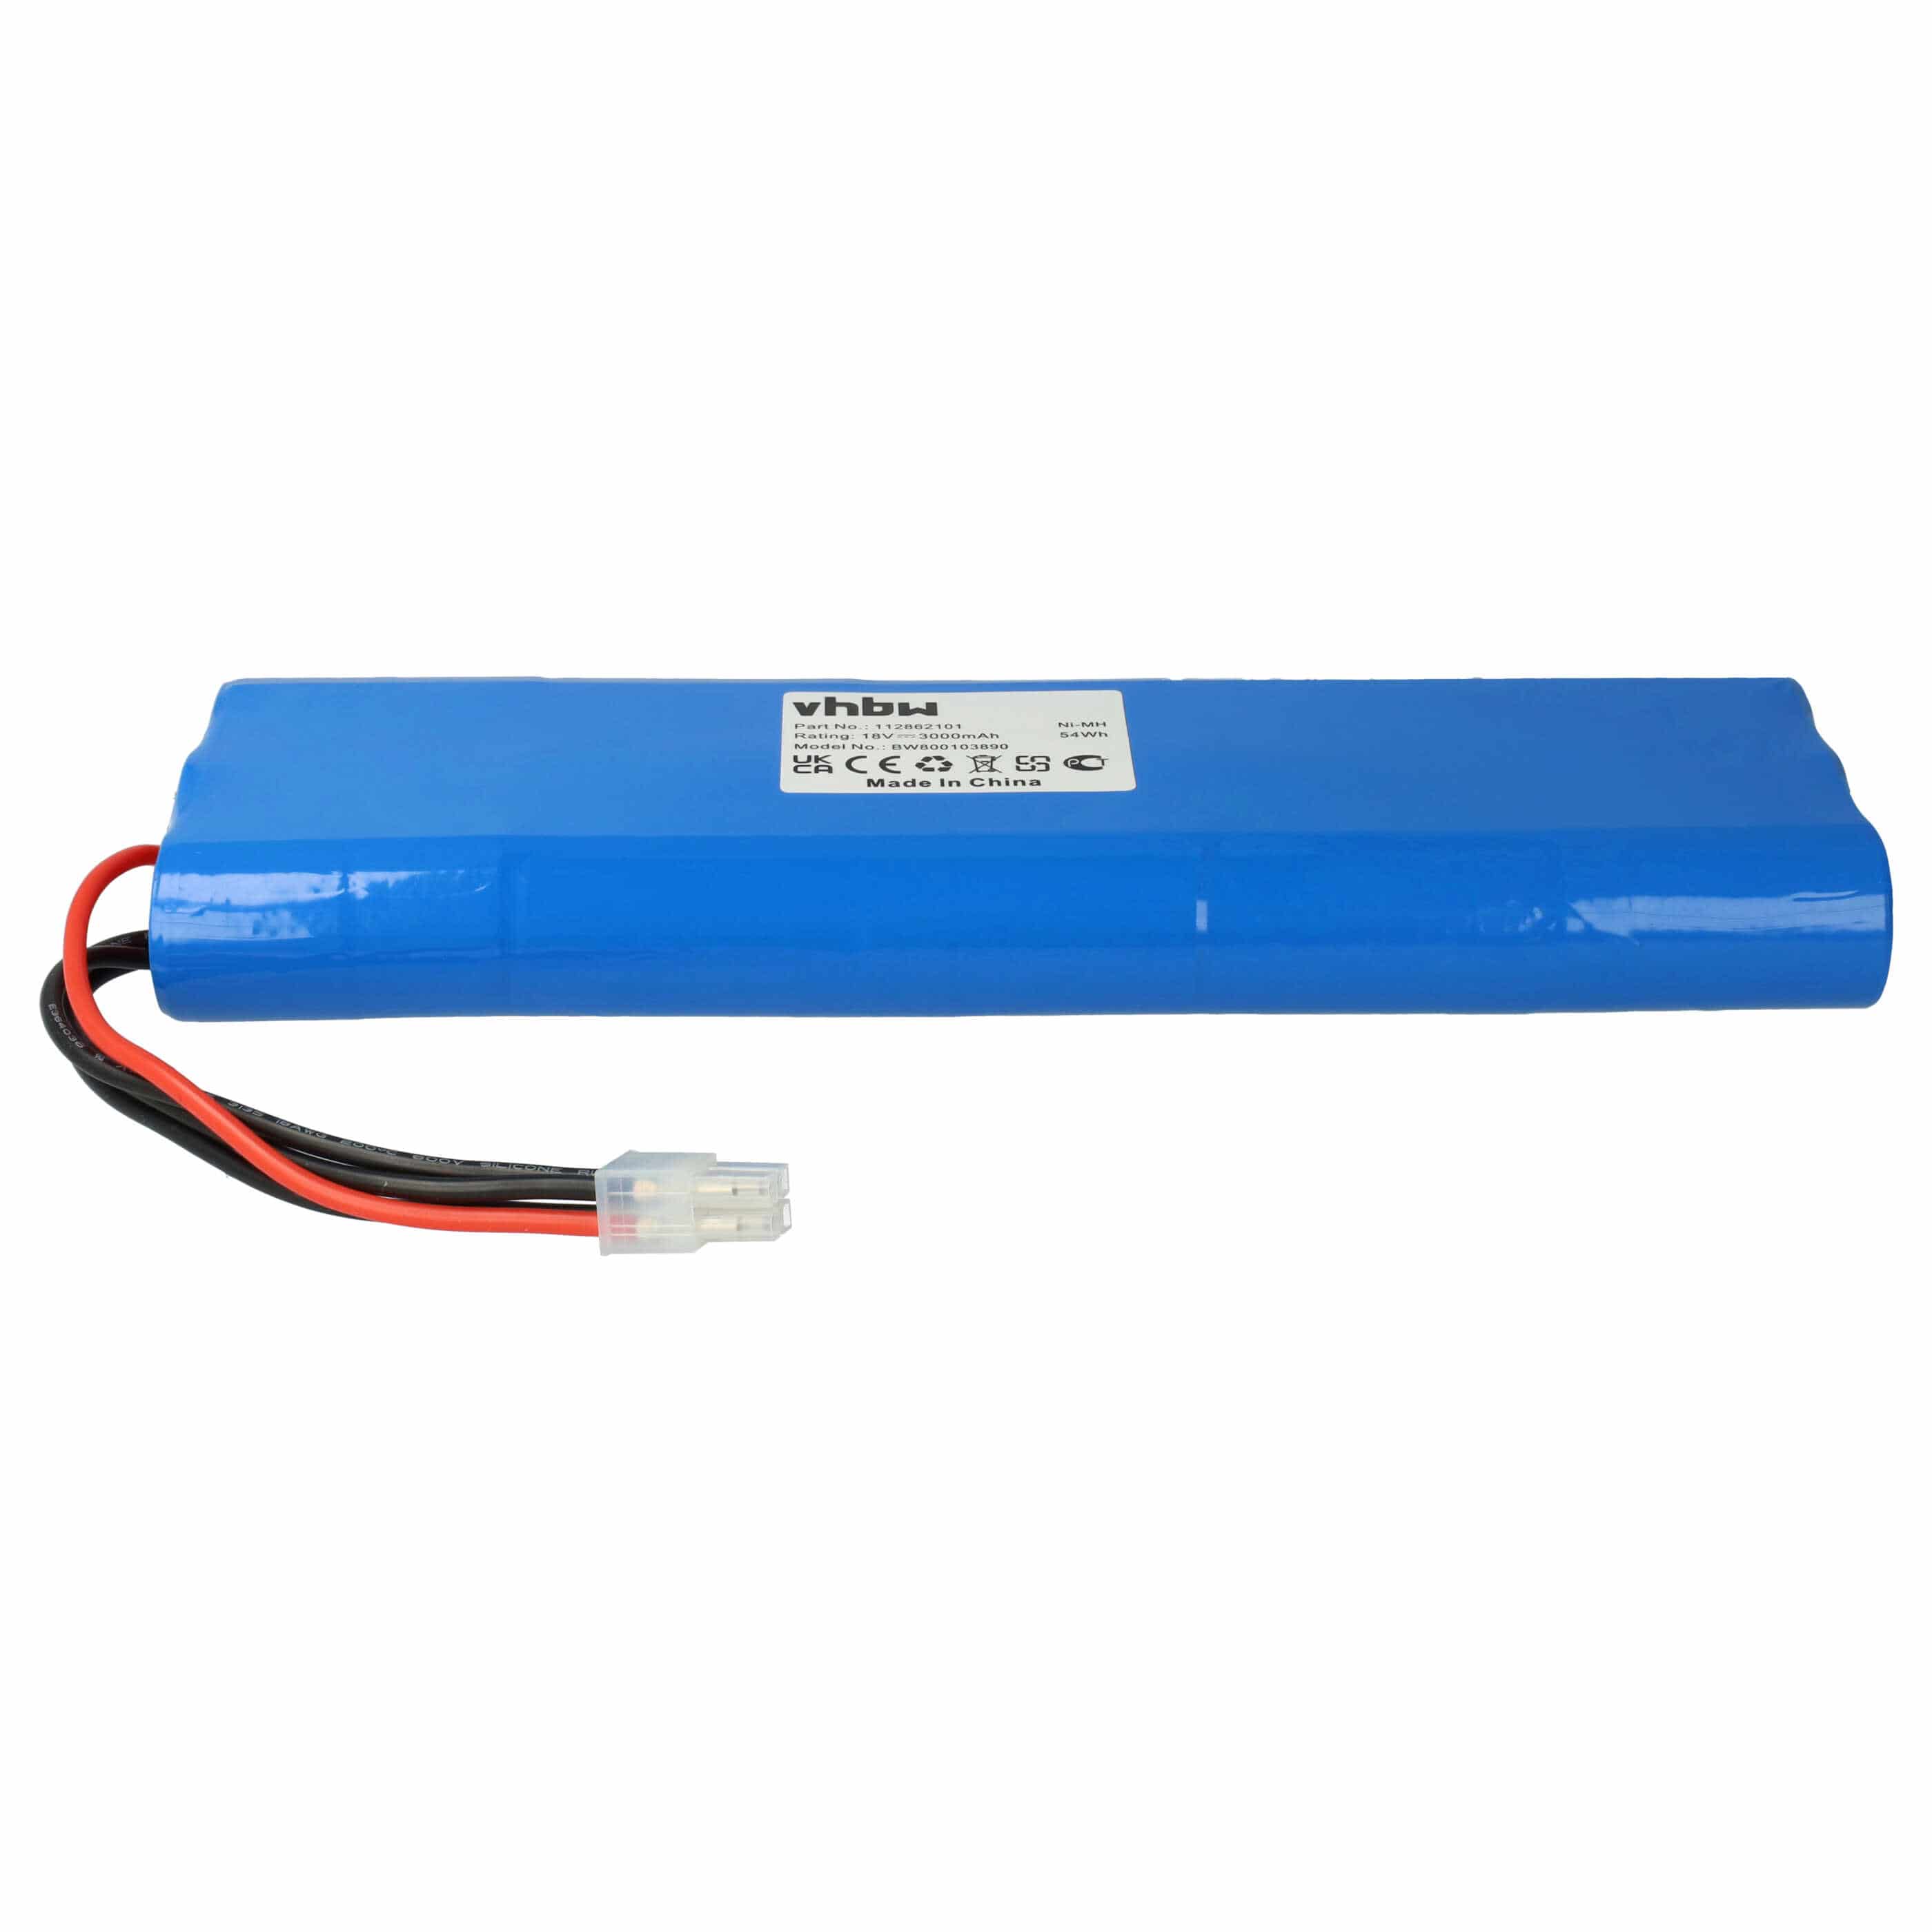 Batería reemplaza Elektrolux 2192110-02 para robot doméstico Elektrolux - 3000 mAh 18 V NiMH azul